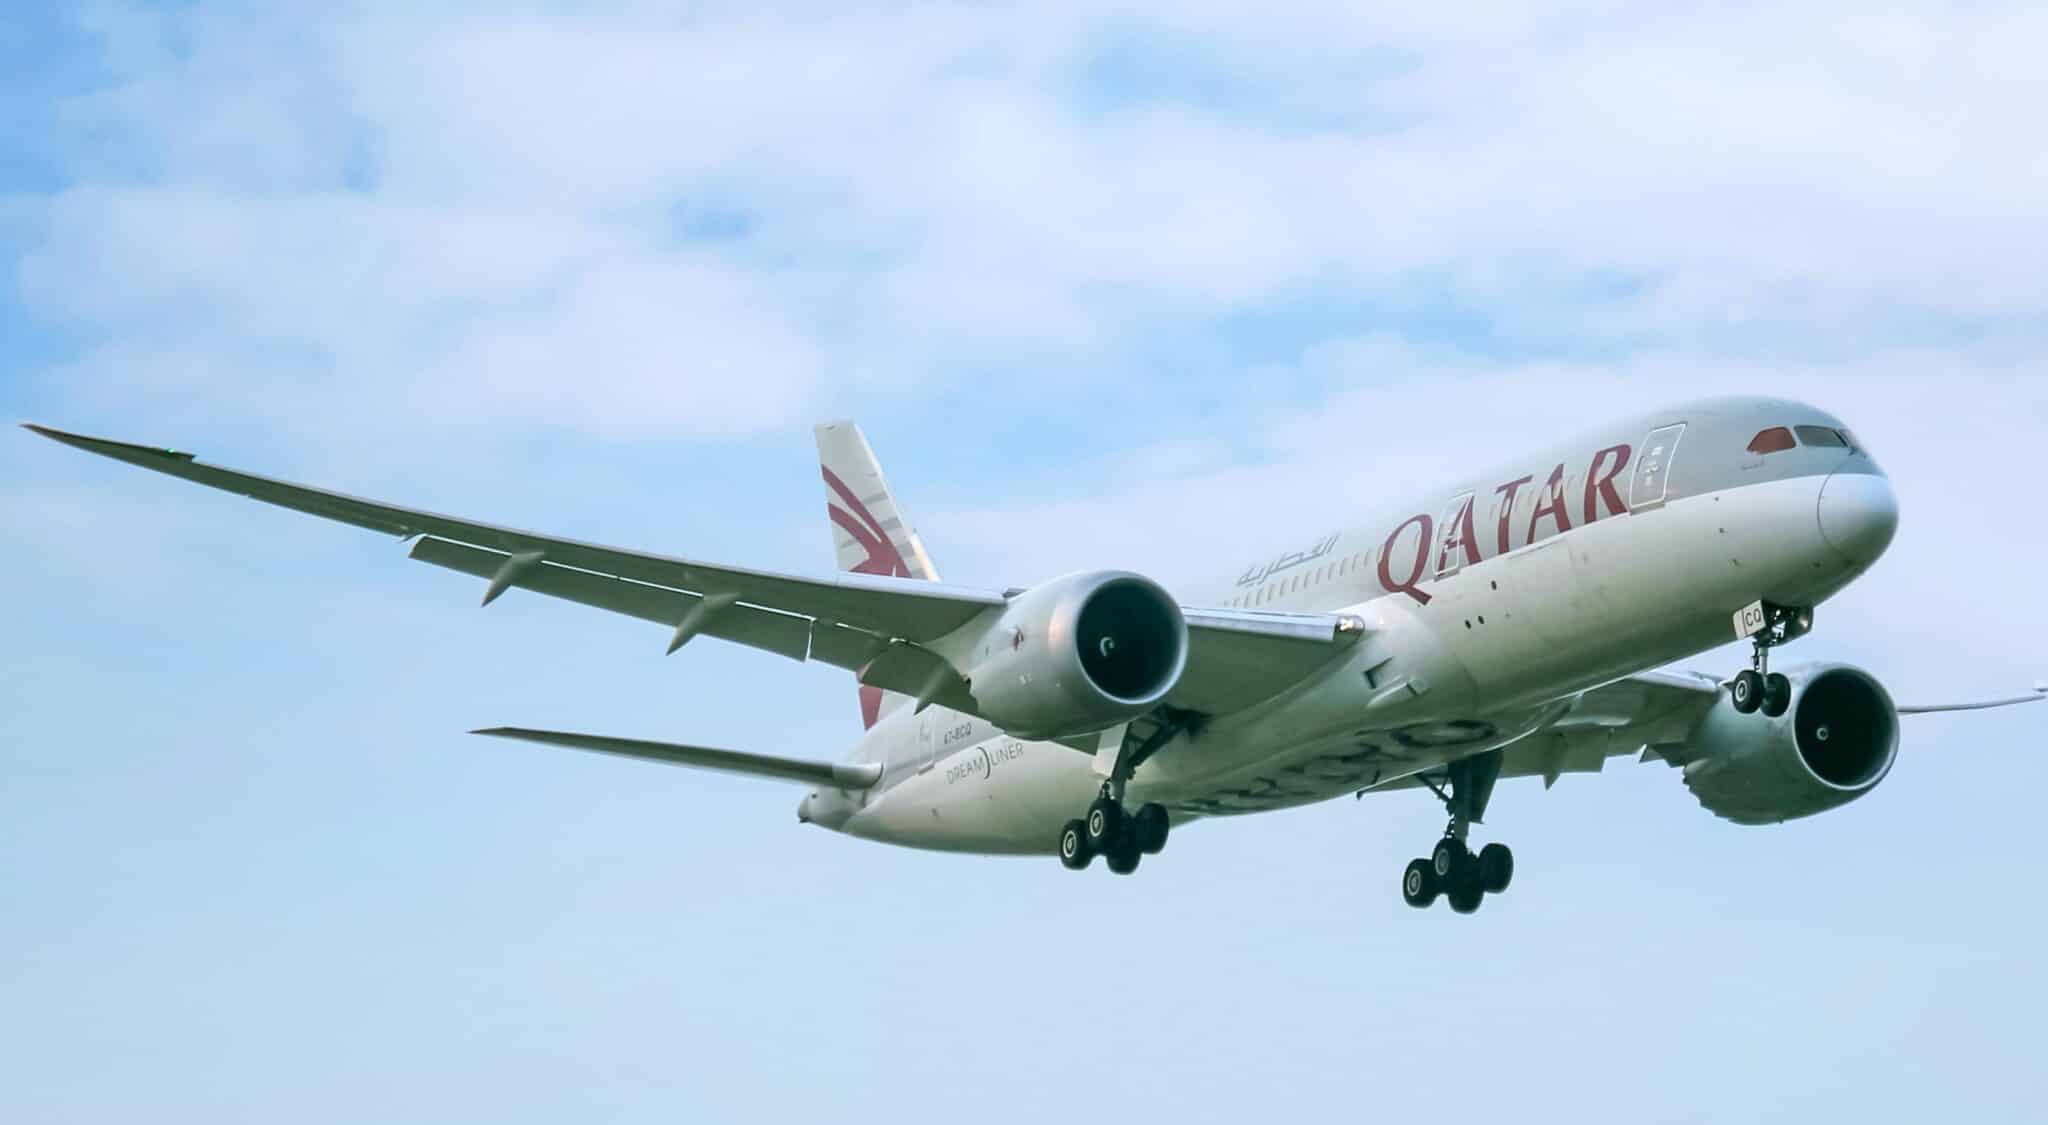 qatar airways aircraft in flight